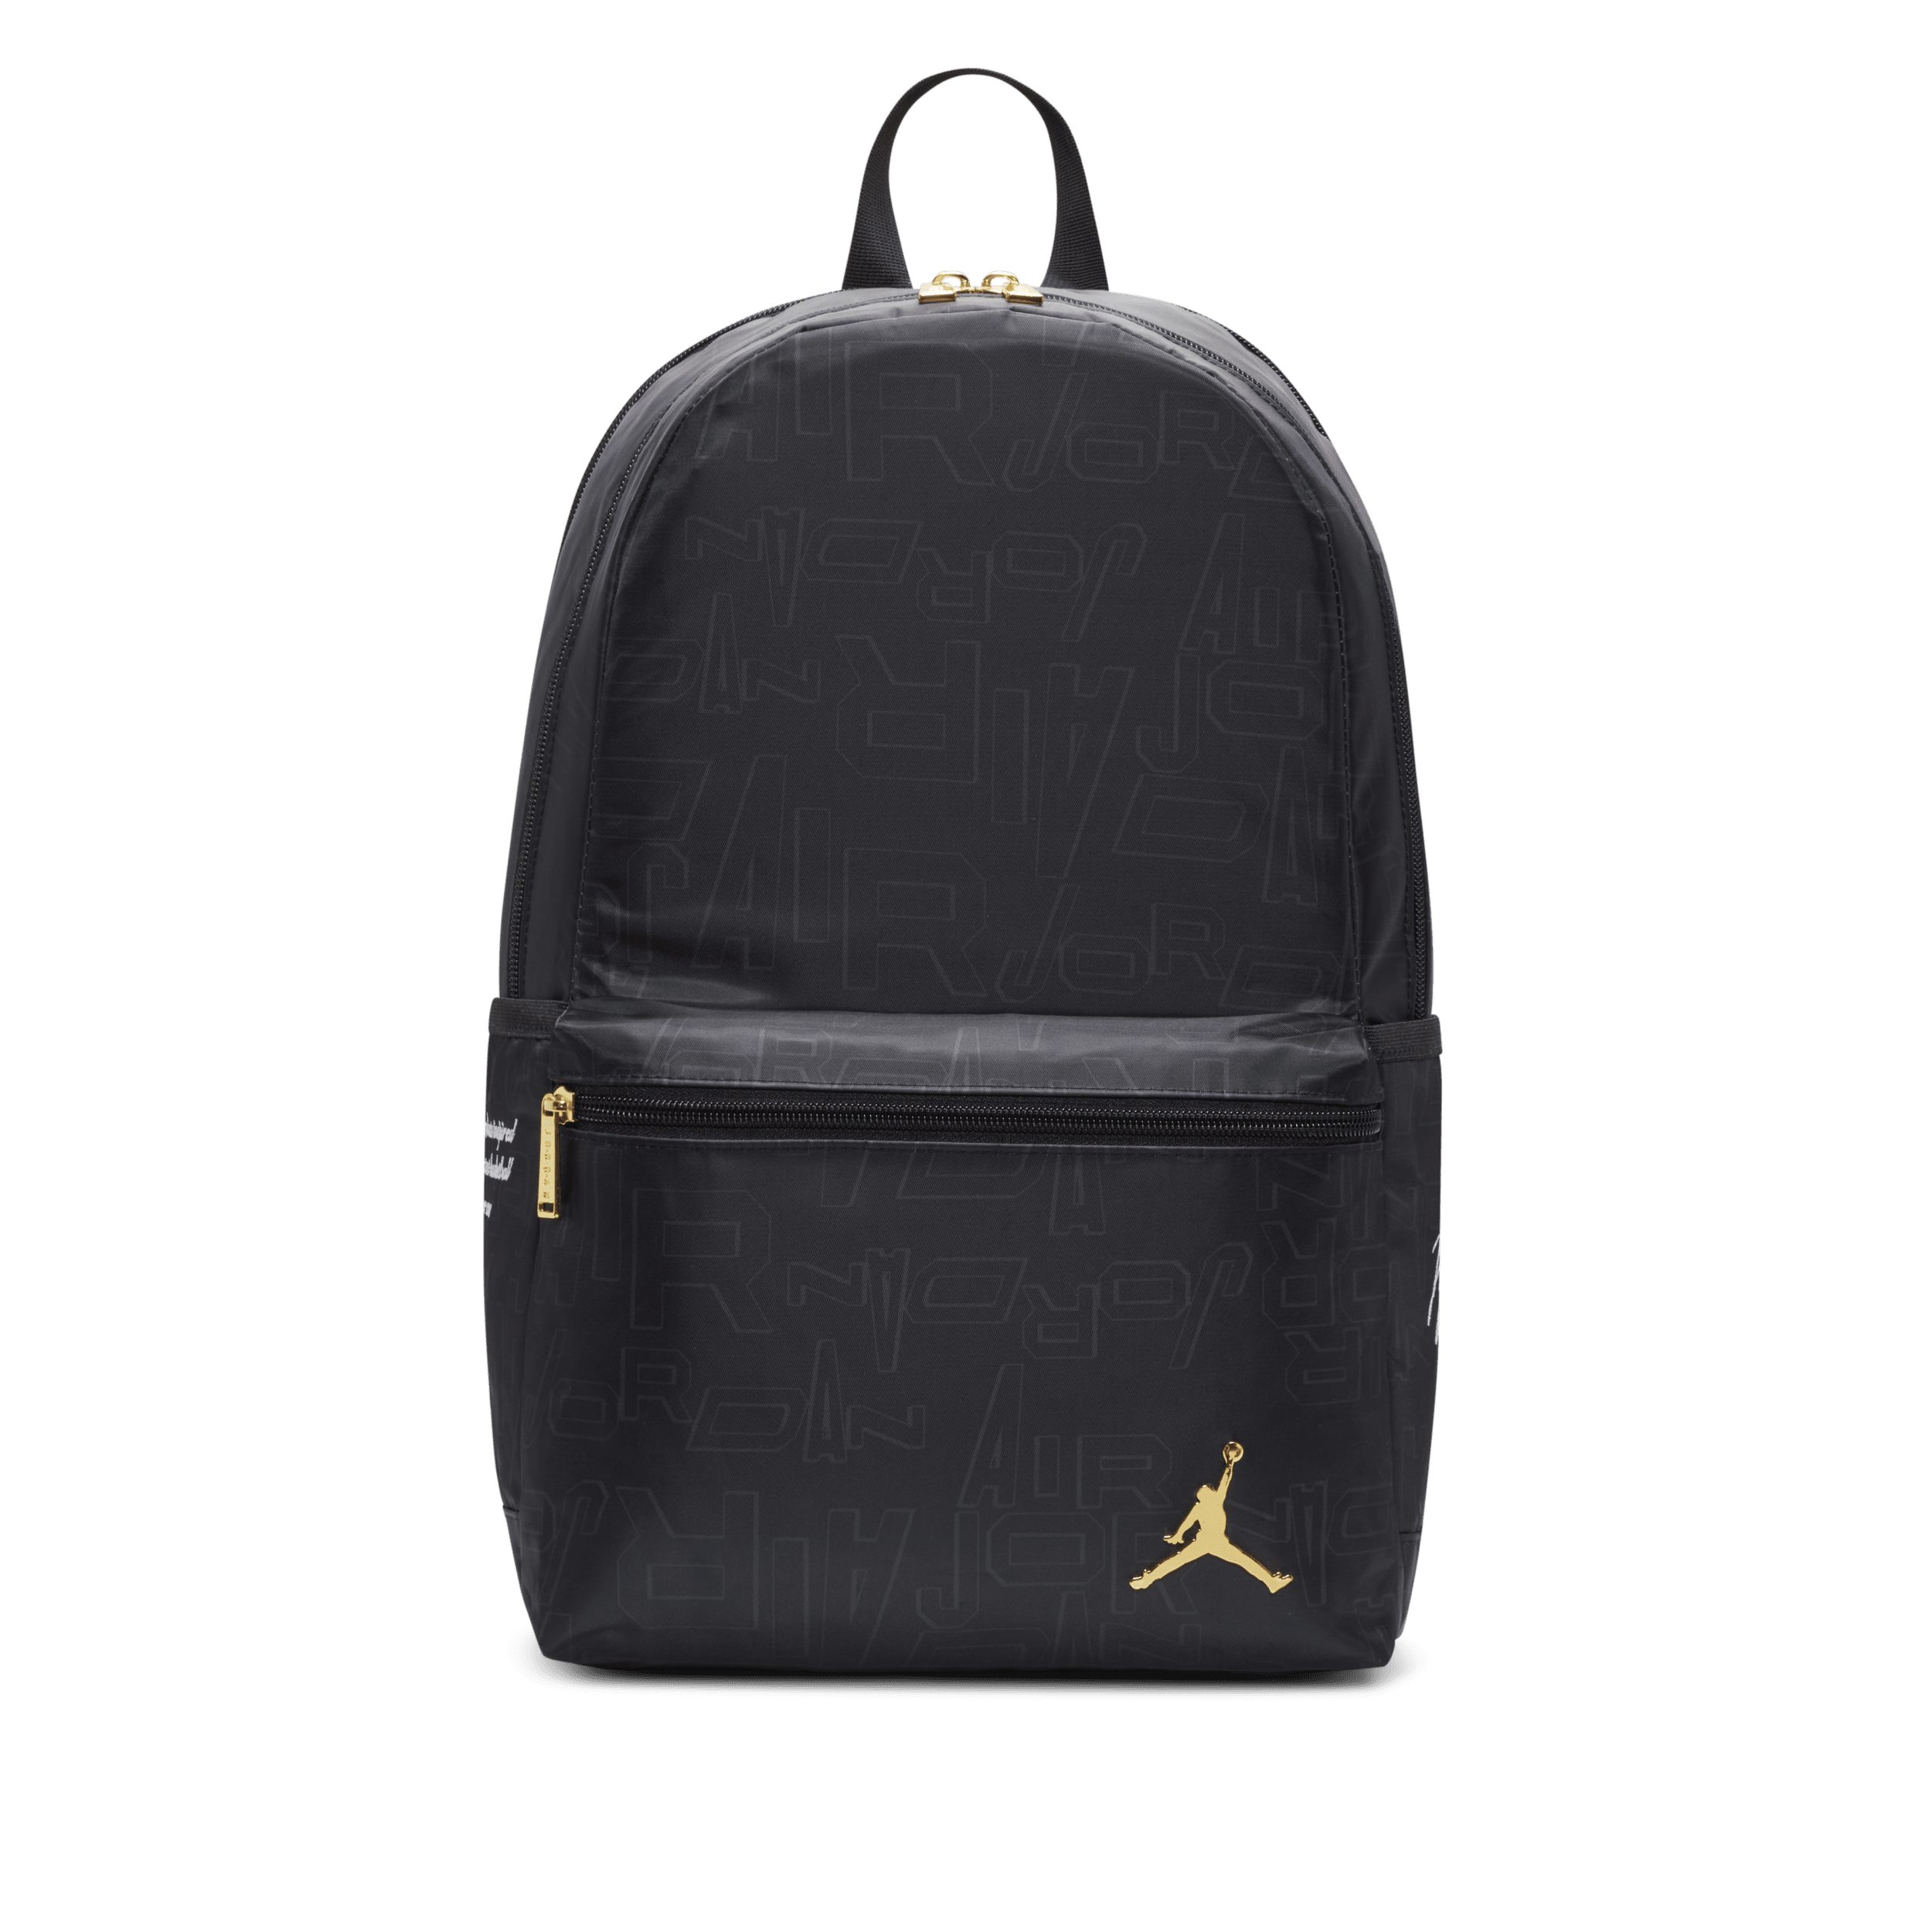 Jordan Black and Gold Backpack Rugzak (19 L) Zwart